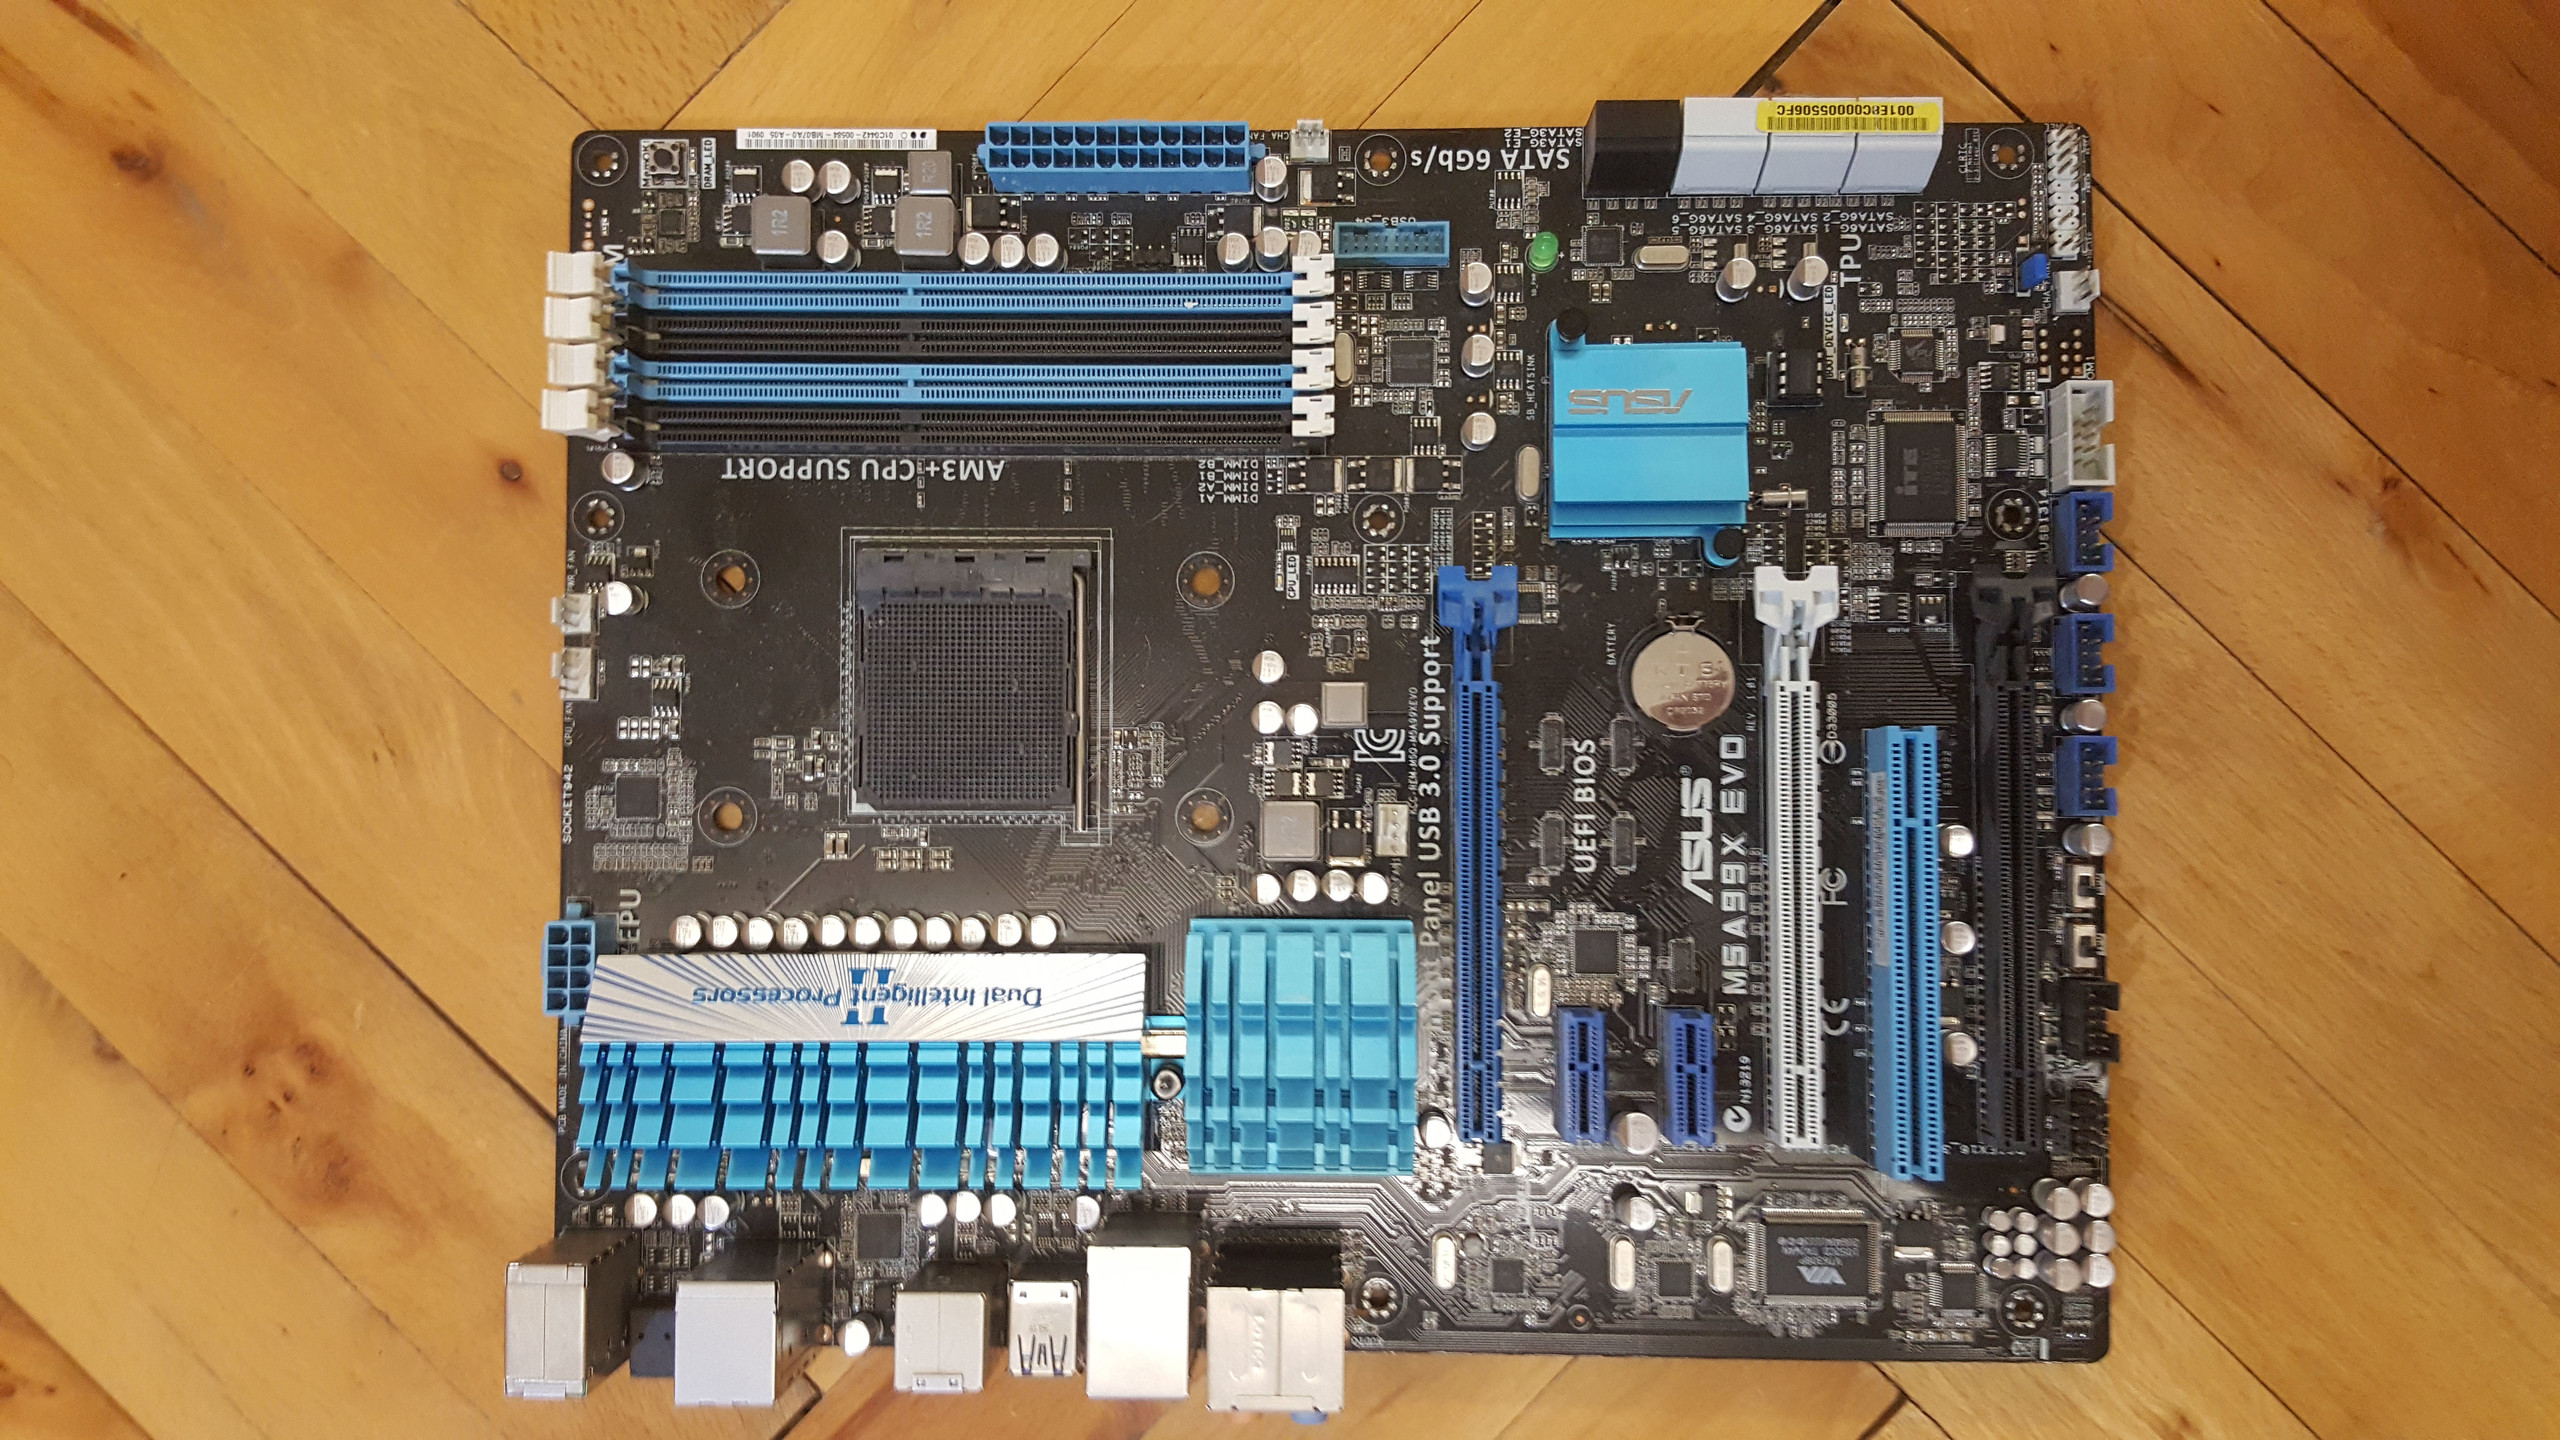 Satılık AMD Phenom II X6 1100T, Asus M5A99X Evo, Corsair Vengeance 4x2:8GB DDR3  1600 Mhz Low Profil